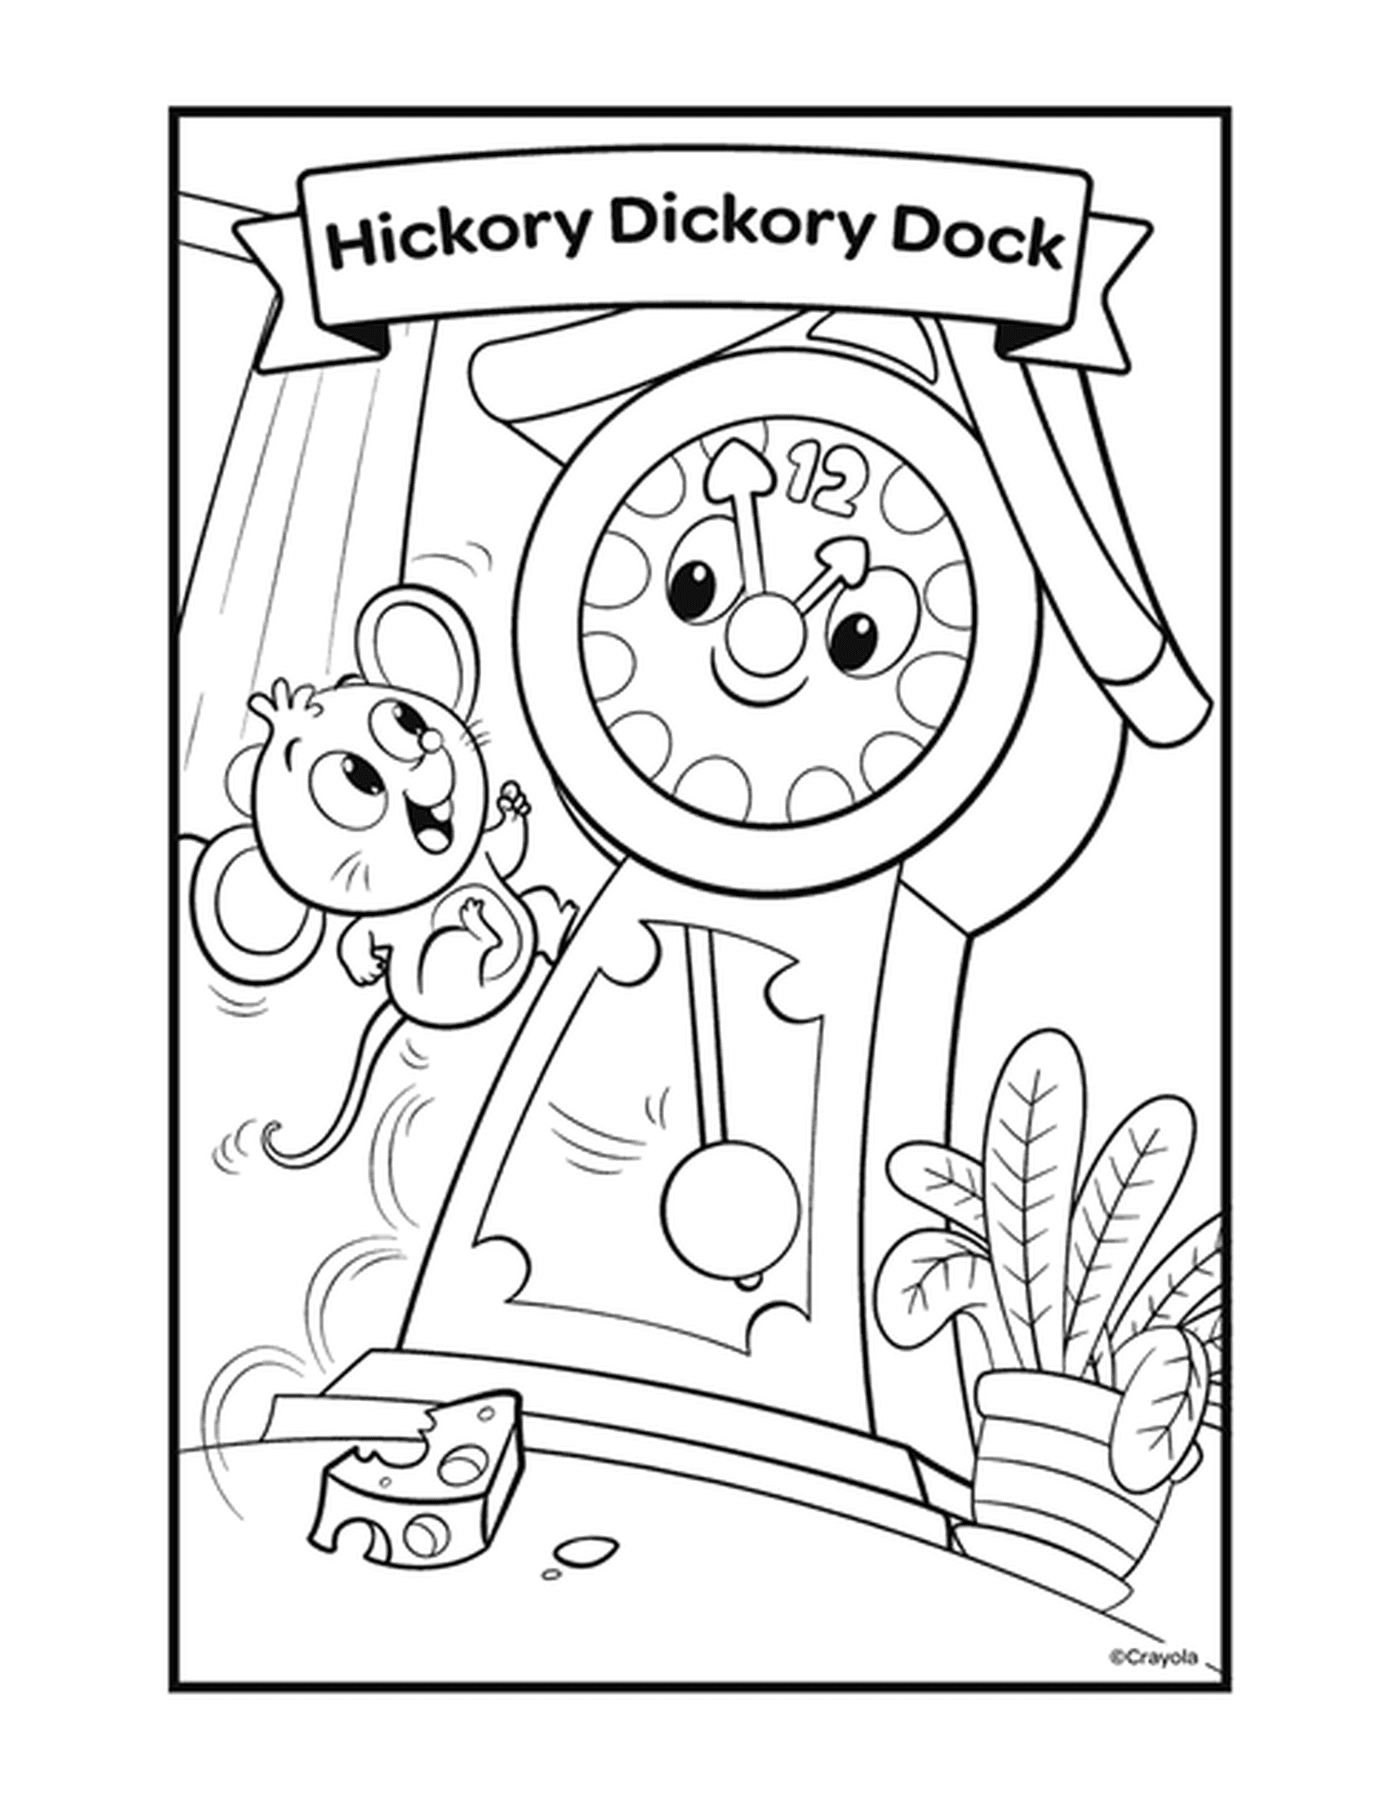   La comptine Hickory Dickory Dock avec une horloge et une souris 